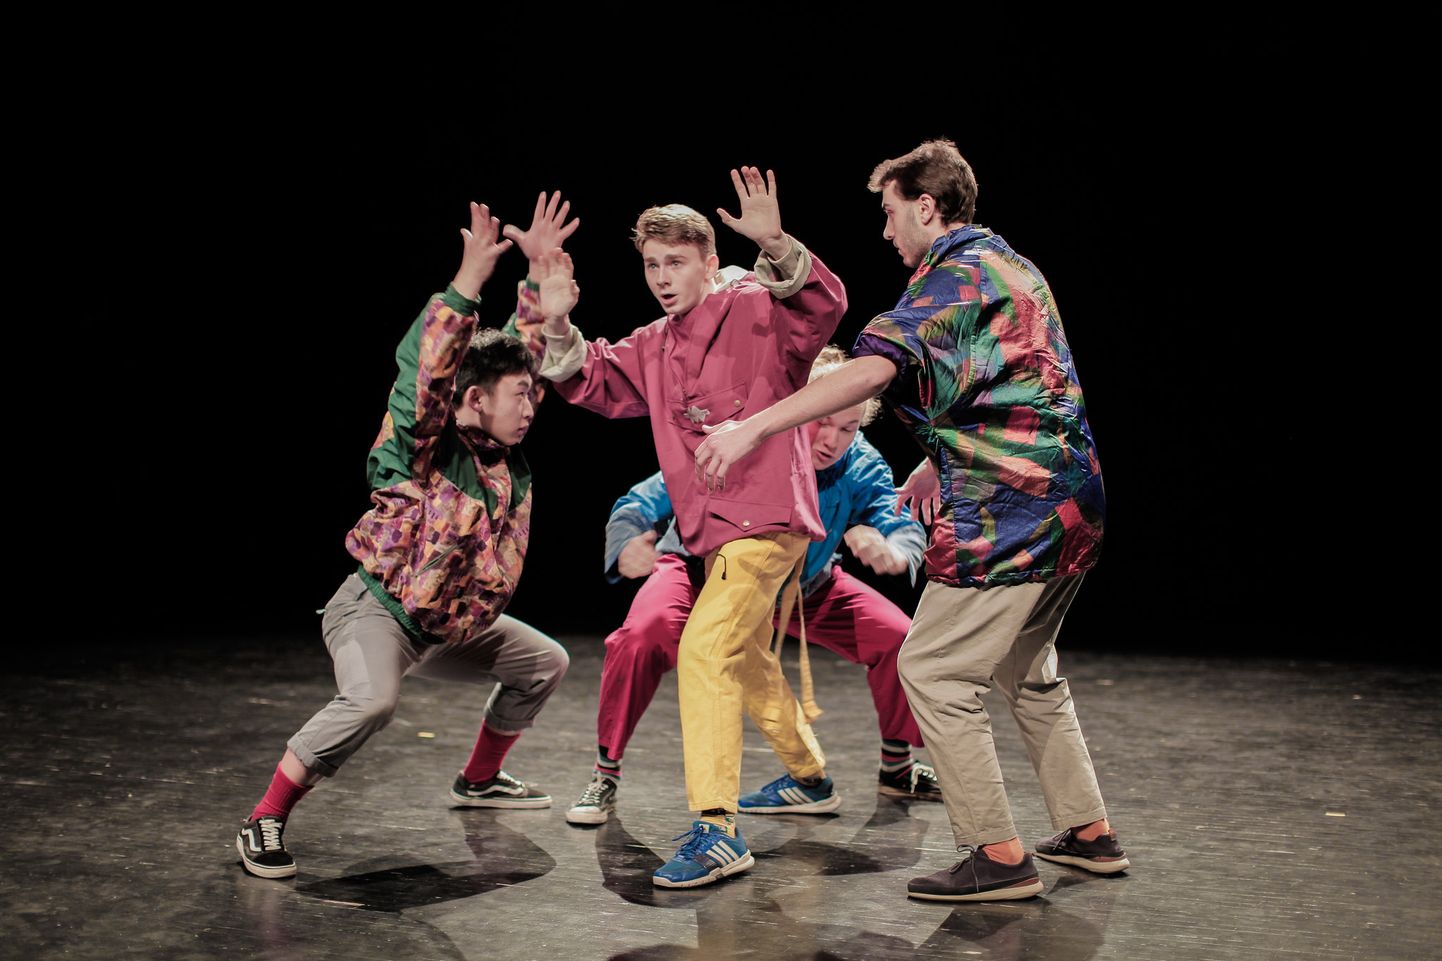 Läti kultuuriakadeemia esimese kursuse tudengid tantsuetendusega "Here". Pilt on tehtud 2019. aastal 17. tudengite teatripäevadel.